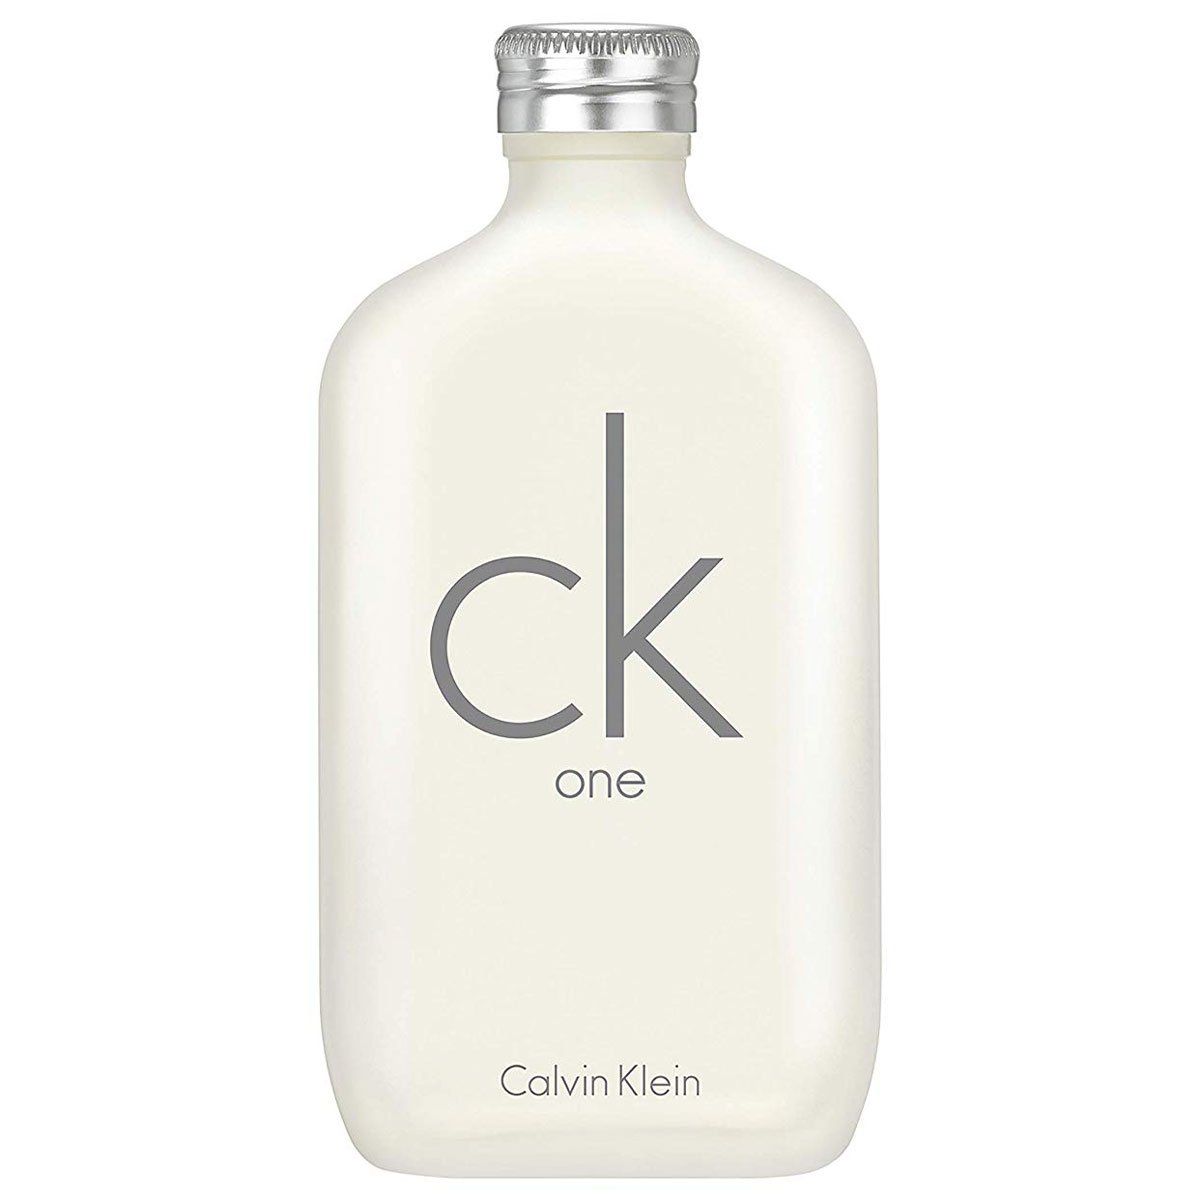  Calvin Klein CK One 